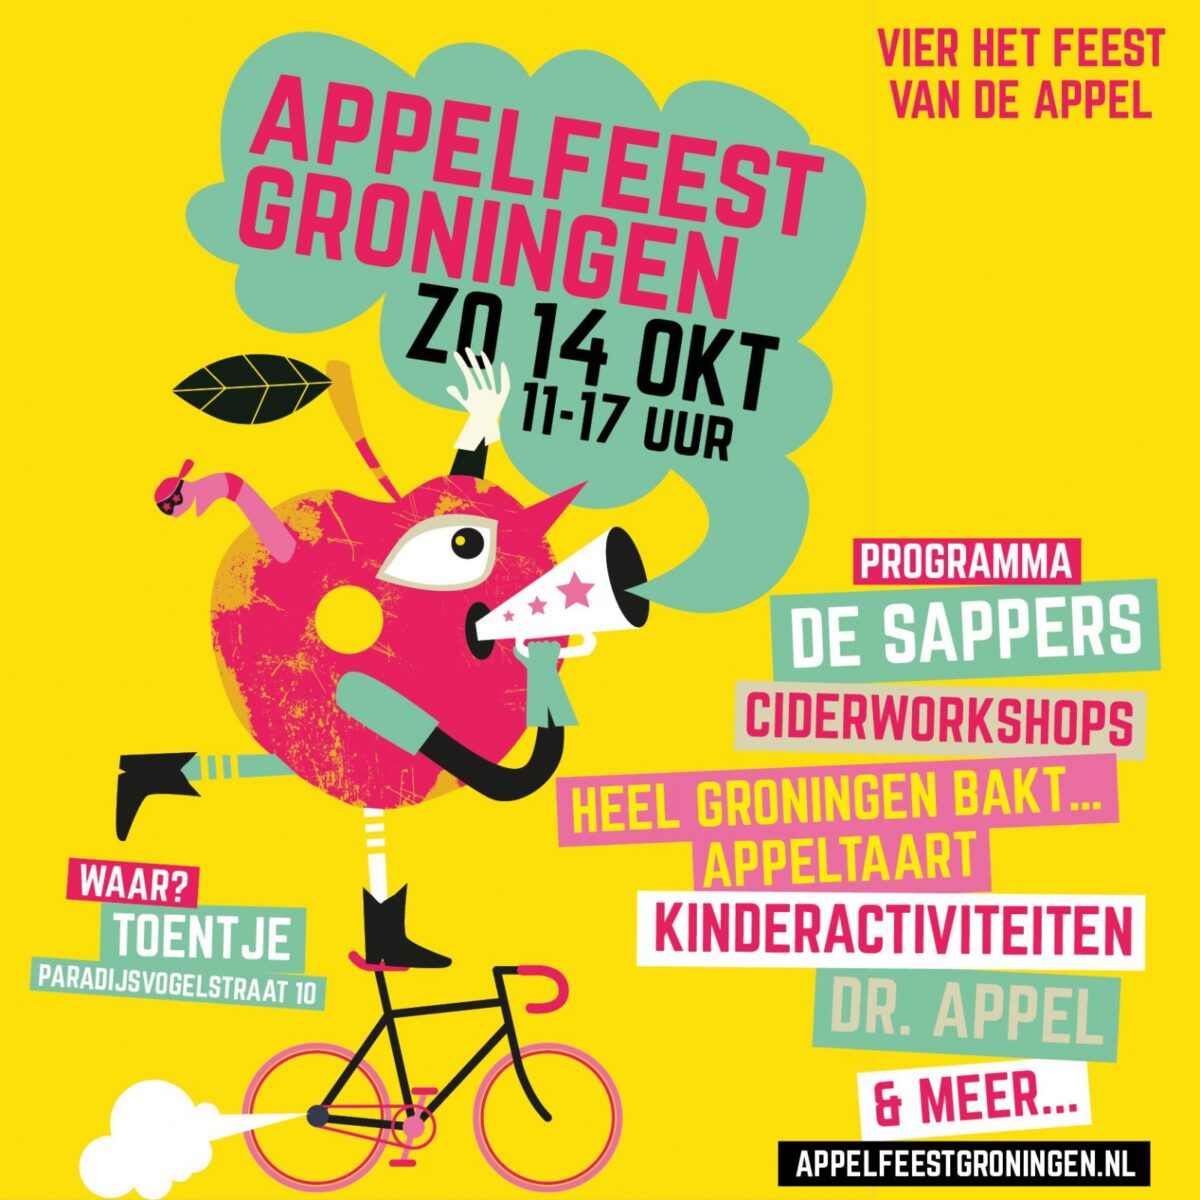 14 oktober: Appelfeest Groningen!